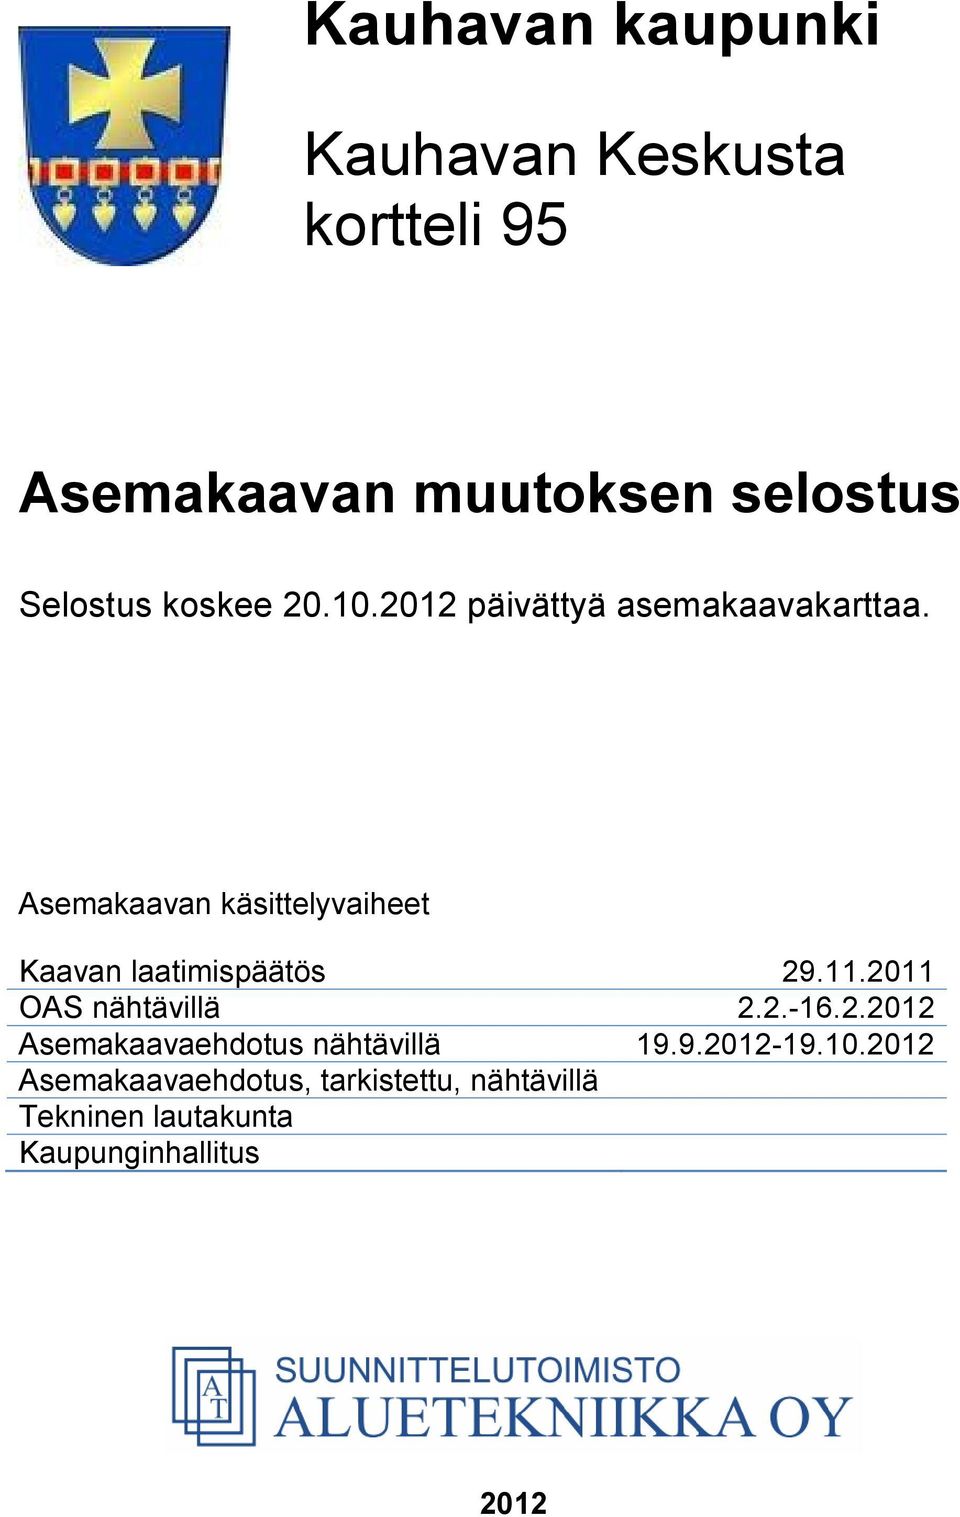 Asemakaavan käsittelyvaiheet Kaavan laatimispäätös 29.11.2011 OAS nähtävillä 2.2.-16.2.2012 Asemakaavaehdotus nähtävillä 19.